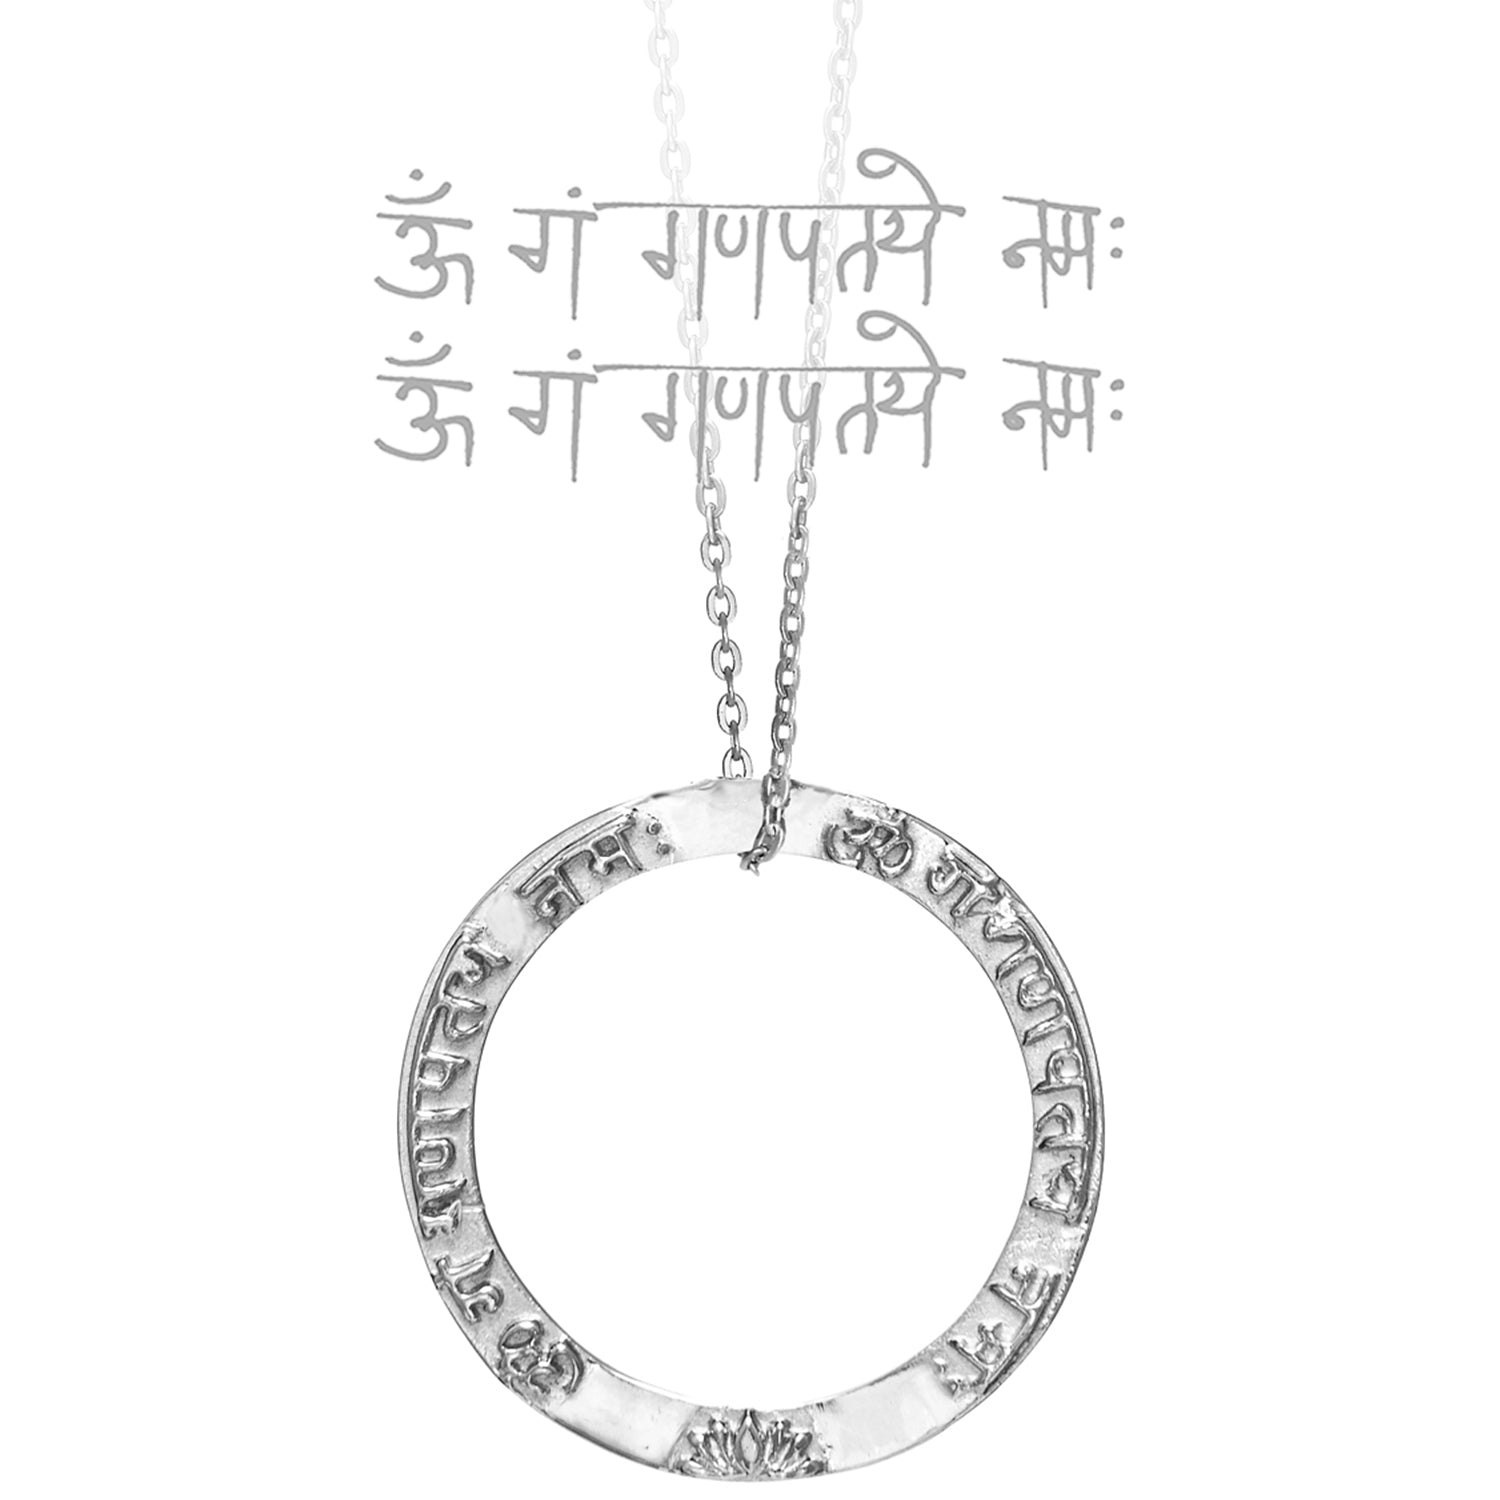 Ringförmiger Ganesha Mantra Anhänger  aus Sterling Silber von ETERNAL BLISS aus der spirituellen Yoga Schmuckkollektion